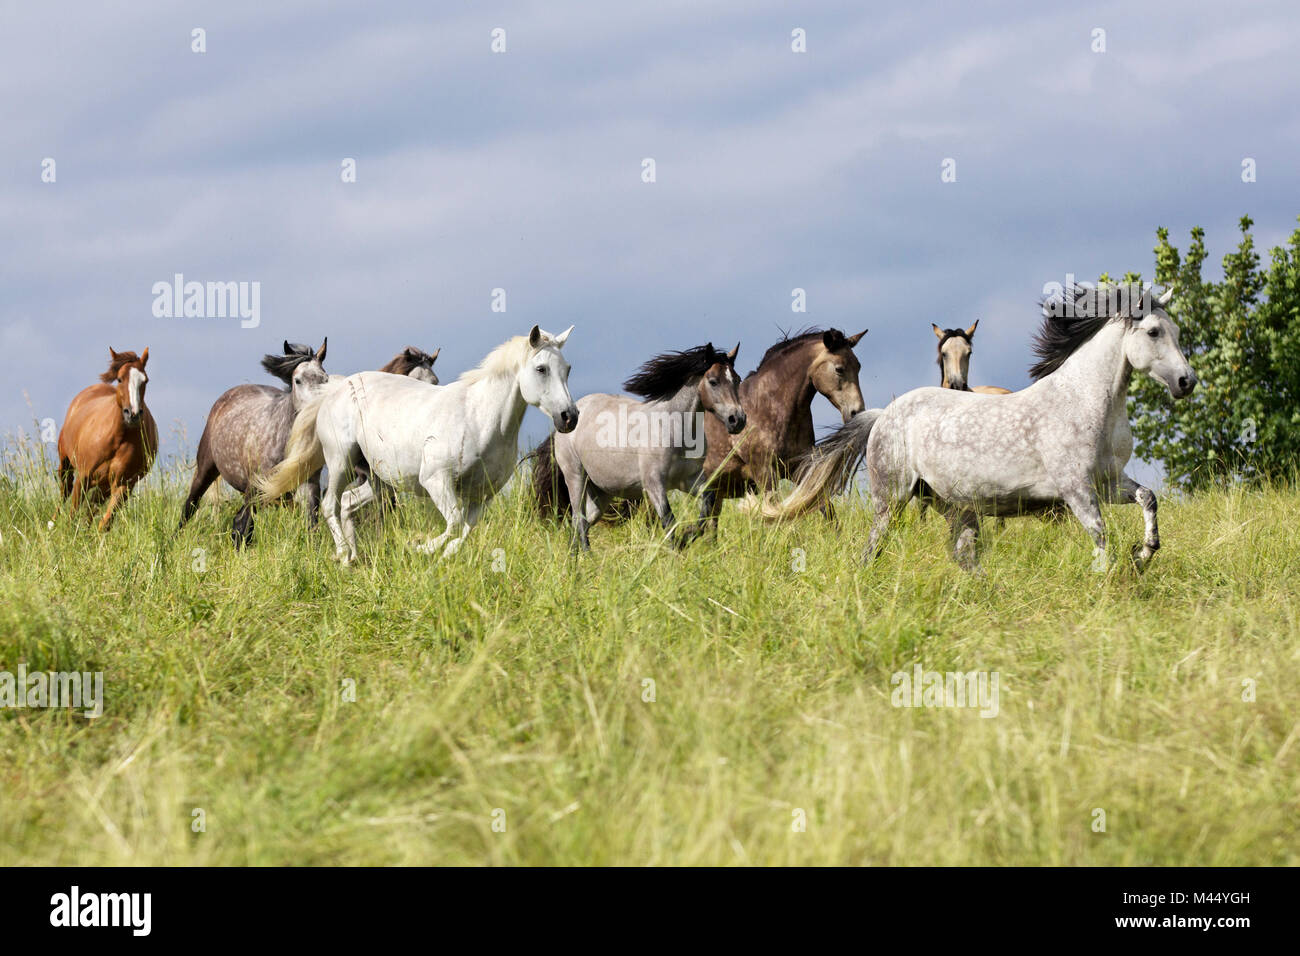 Cheval domestique. Troupeau de chevaux avec différentes couleurs, principalement des connemaras, galopant à travers l'herbe. Allemagne Banque D'Images